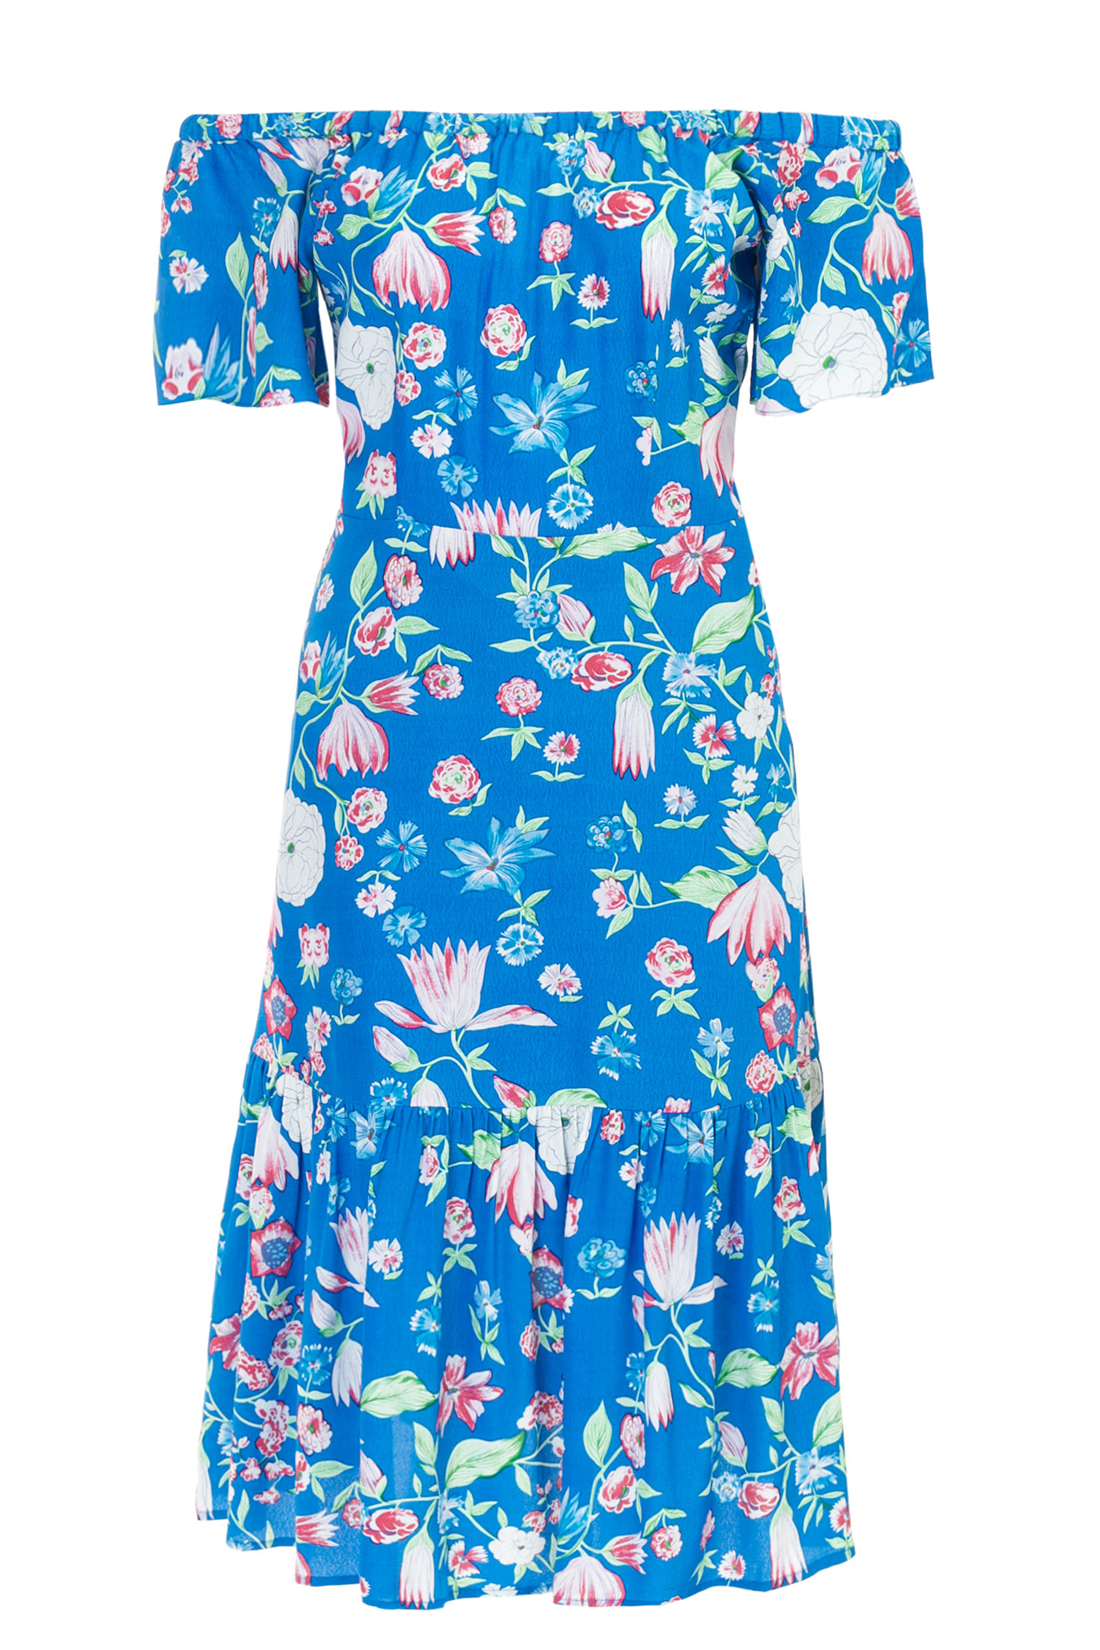 Платье с оборкой и открытыми плечами (арт. baon B457055), размер XS, цвет синий Платье с оборкой и открытыми плечами (арт. baon B457055) - фото 3